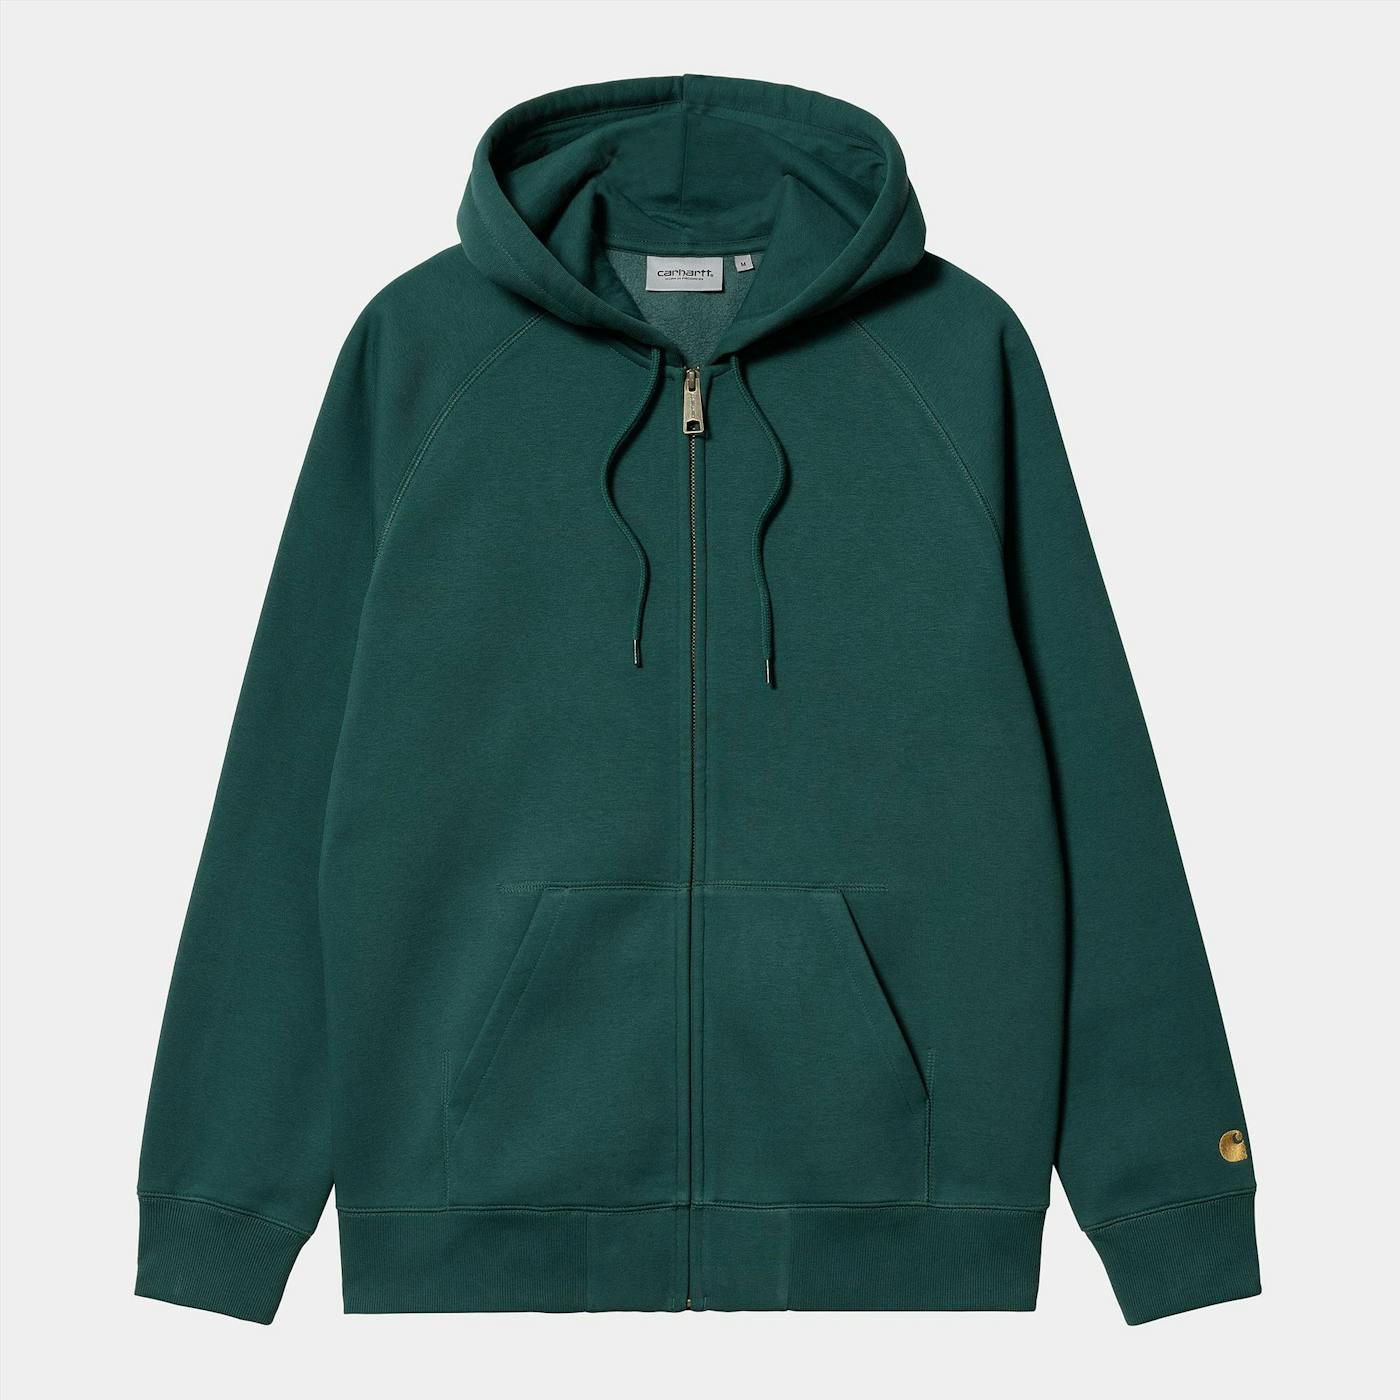 Carhartt WIP - Donkergroene Chase hoodie